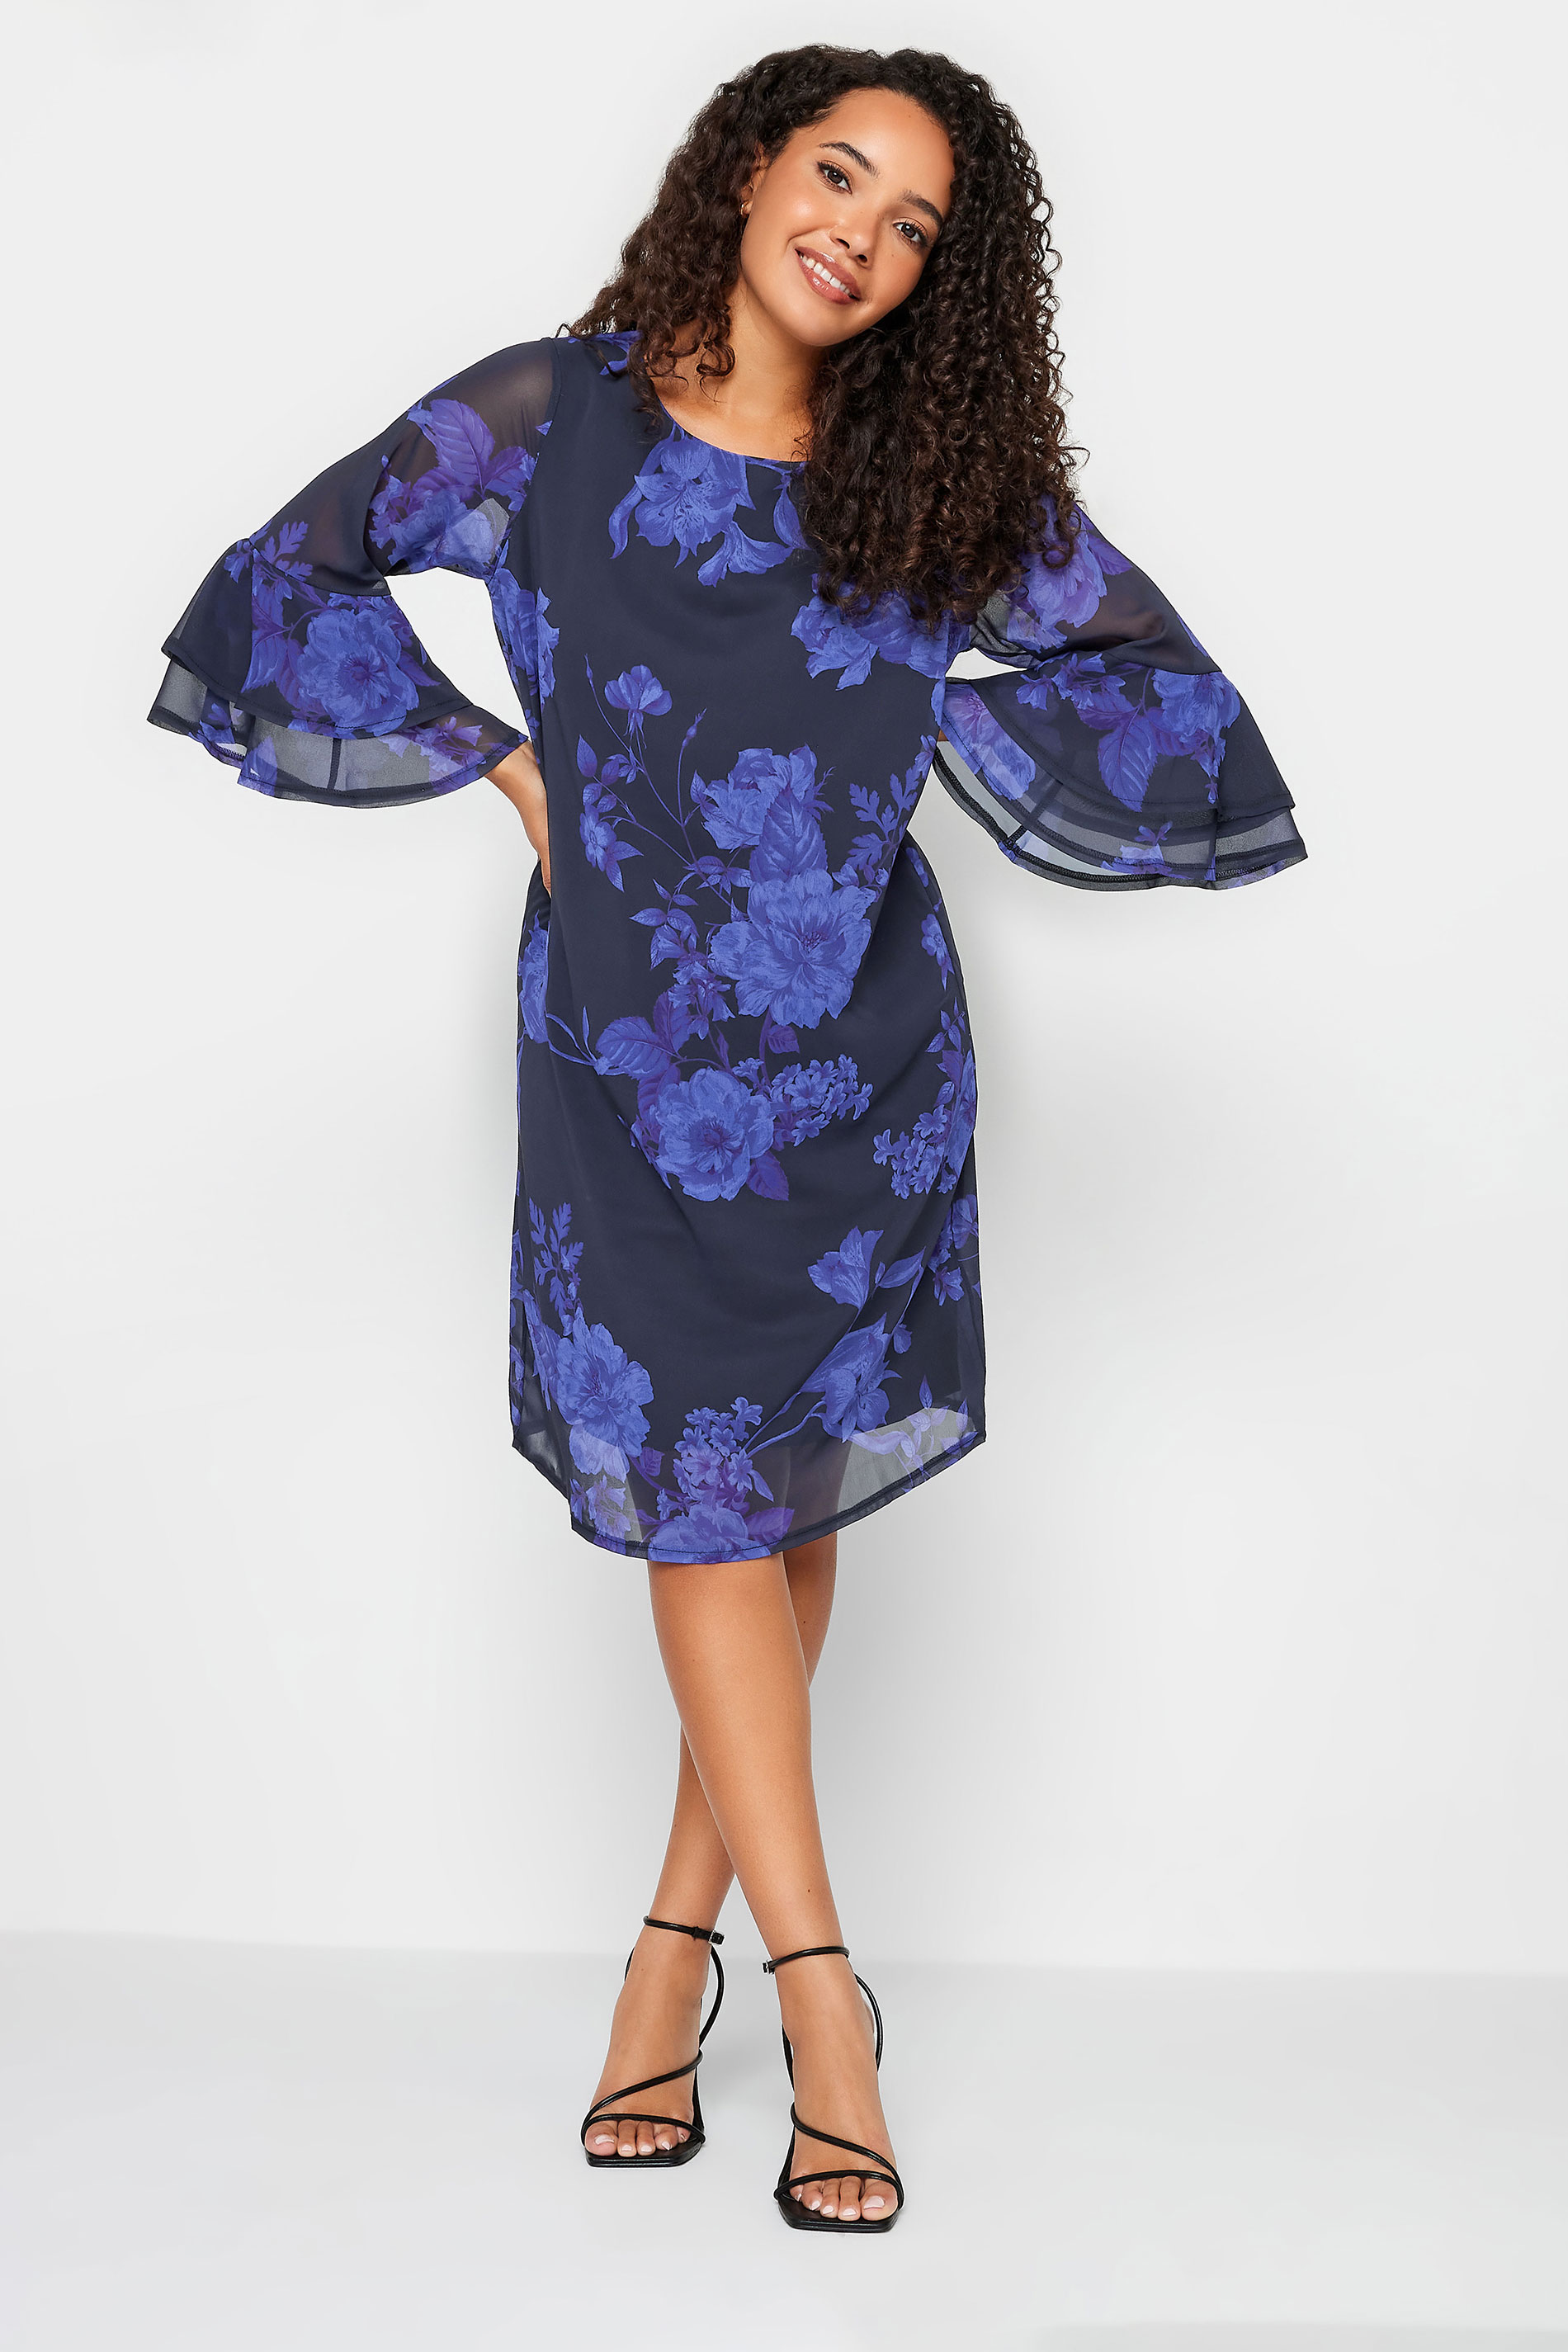 M&Co Black & Purple Floral Print Flute Sleeve Shift Dress | M&Co